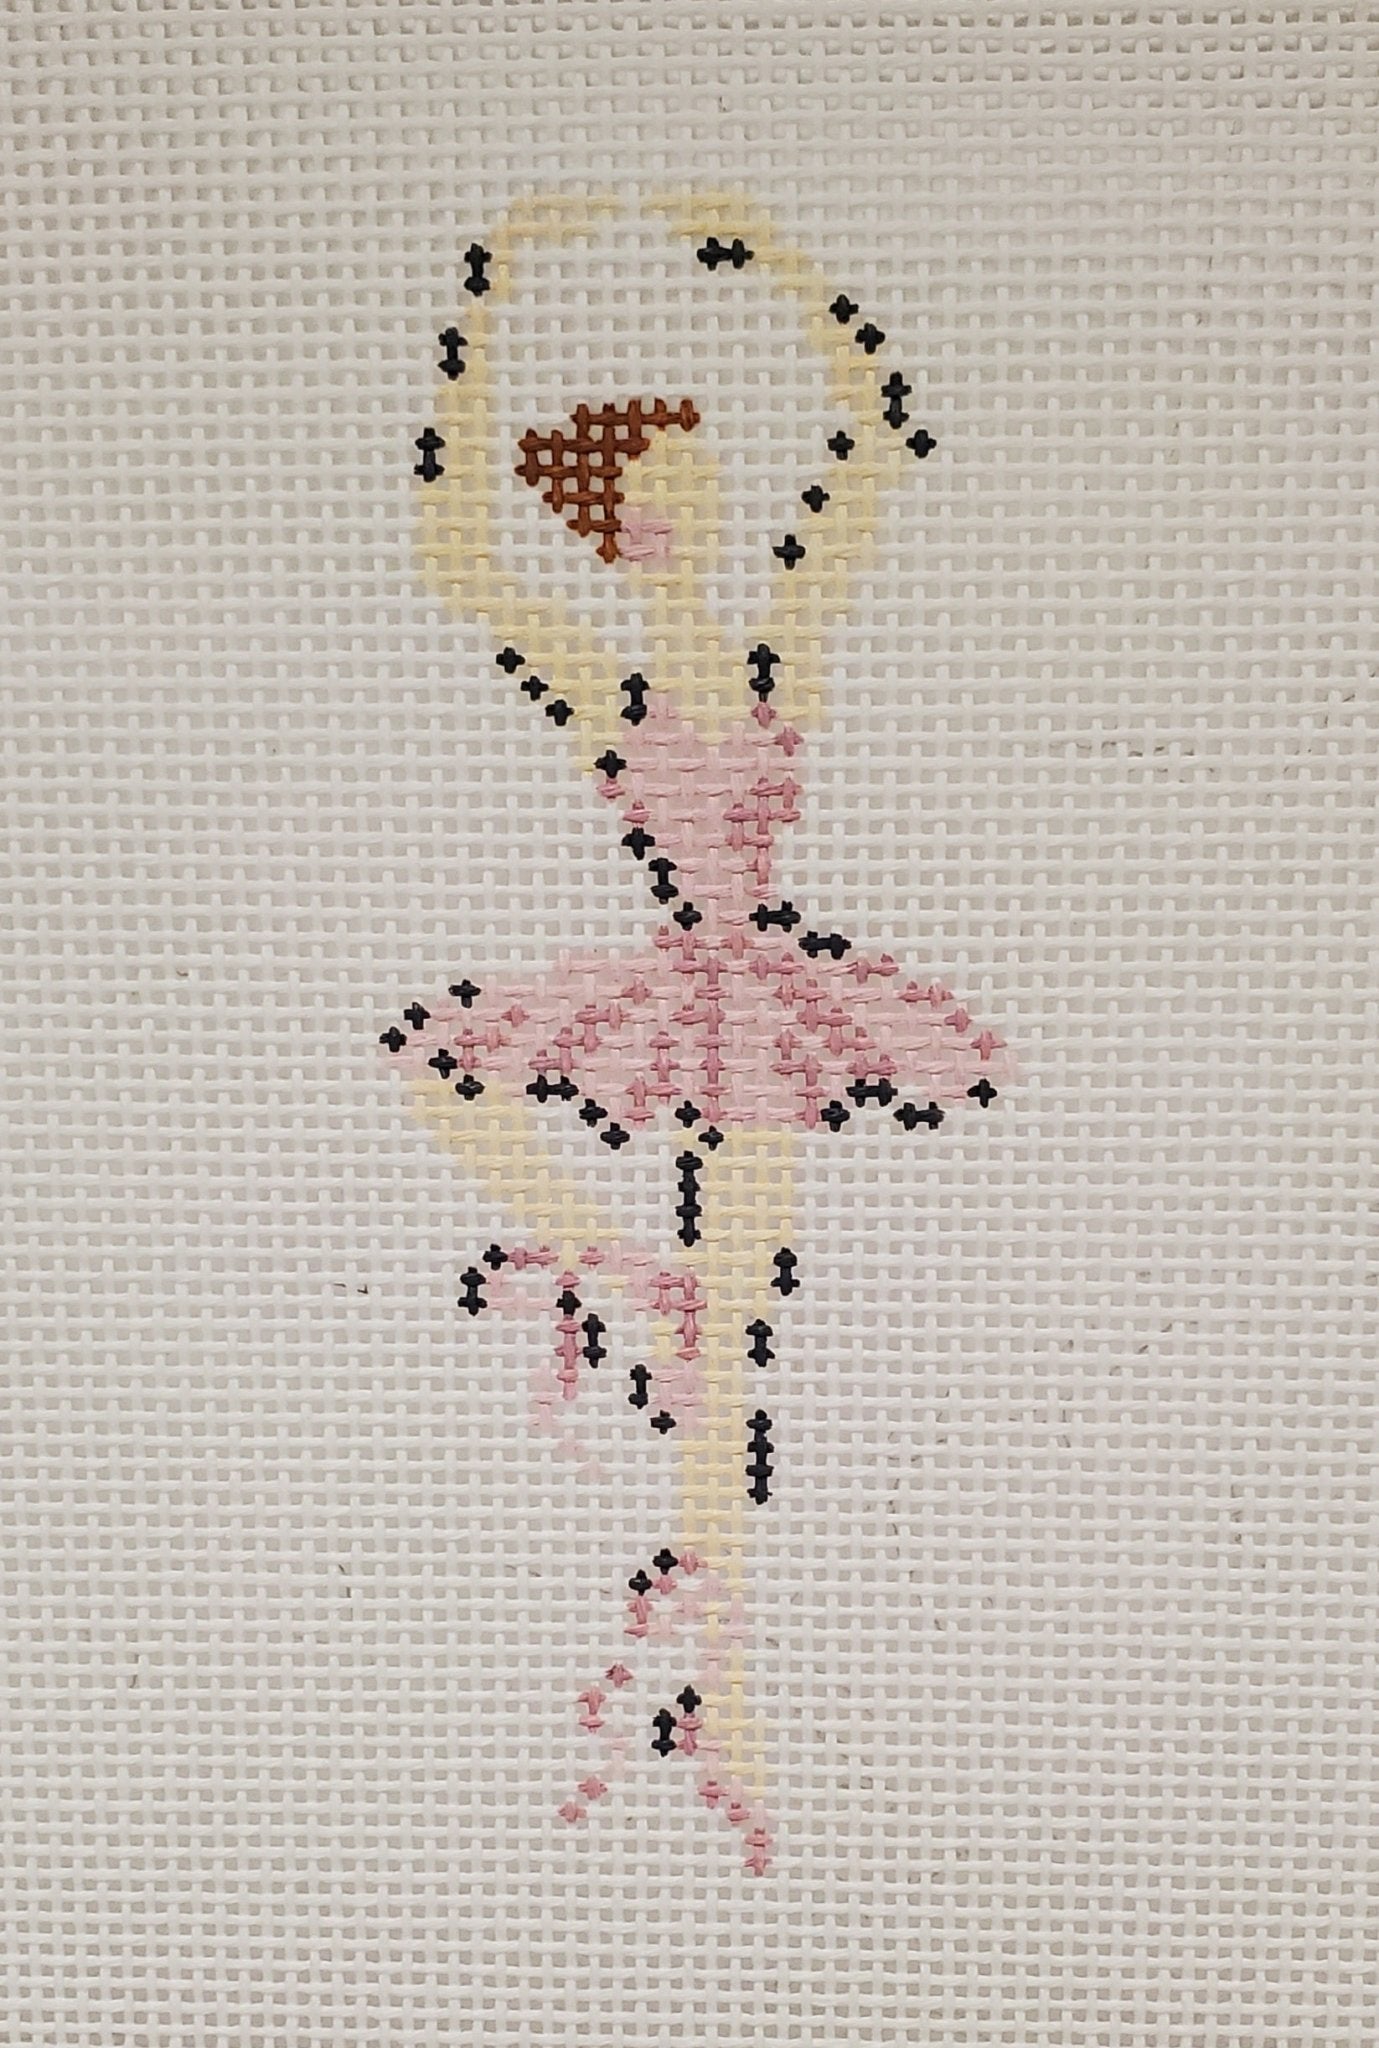 Ballerina Pirouette - The Flying Needles